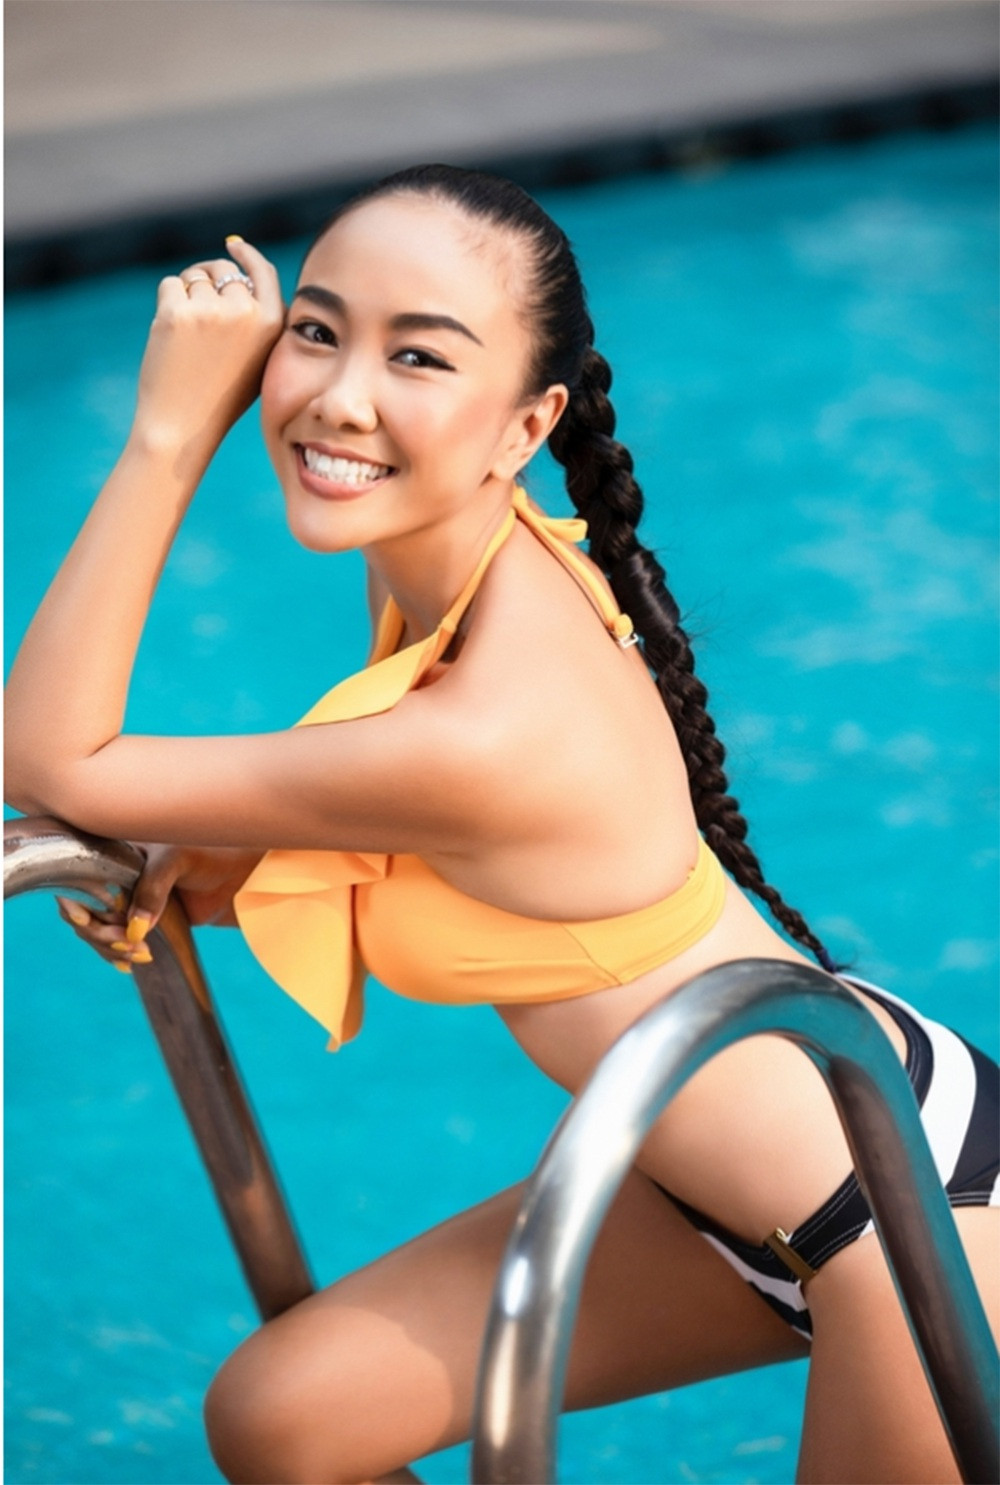 Tương tự siêu mẫu Minh Tú, Đoan Trang chưa bao giờ có ý định thay đổi màu sắc làn da của mình dù cô có điều kiện. Hơn nữa, chồng của nữ ca sĩ là đàn ông ngoại quốc nên càng thích phụ nữ có da nâu.